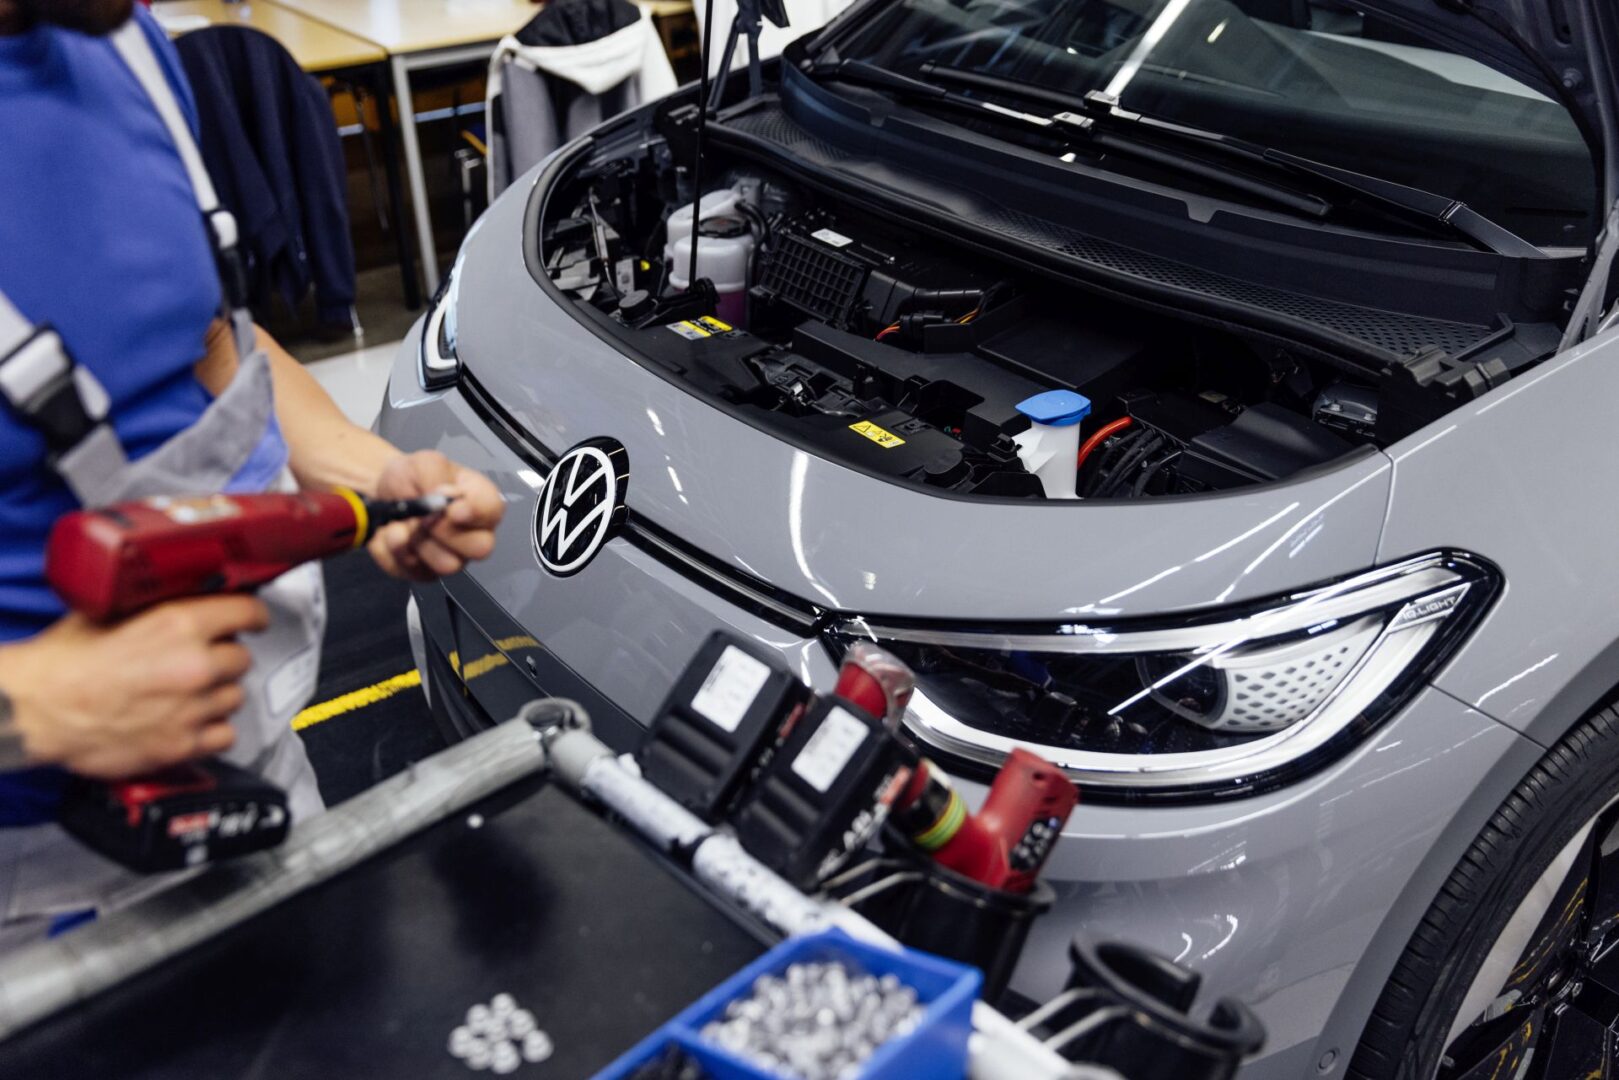 Nakon smanjenja proizvodnje, Volkswagen sada u potpunosti zaustavlja proizvodnju električnih modela